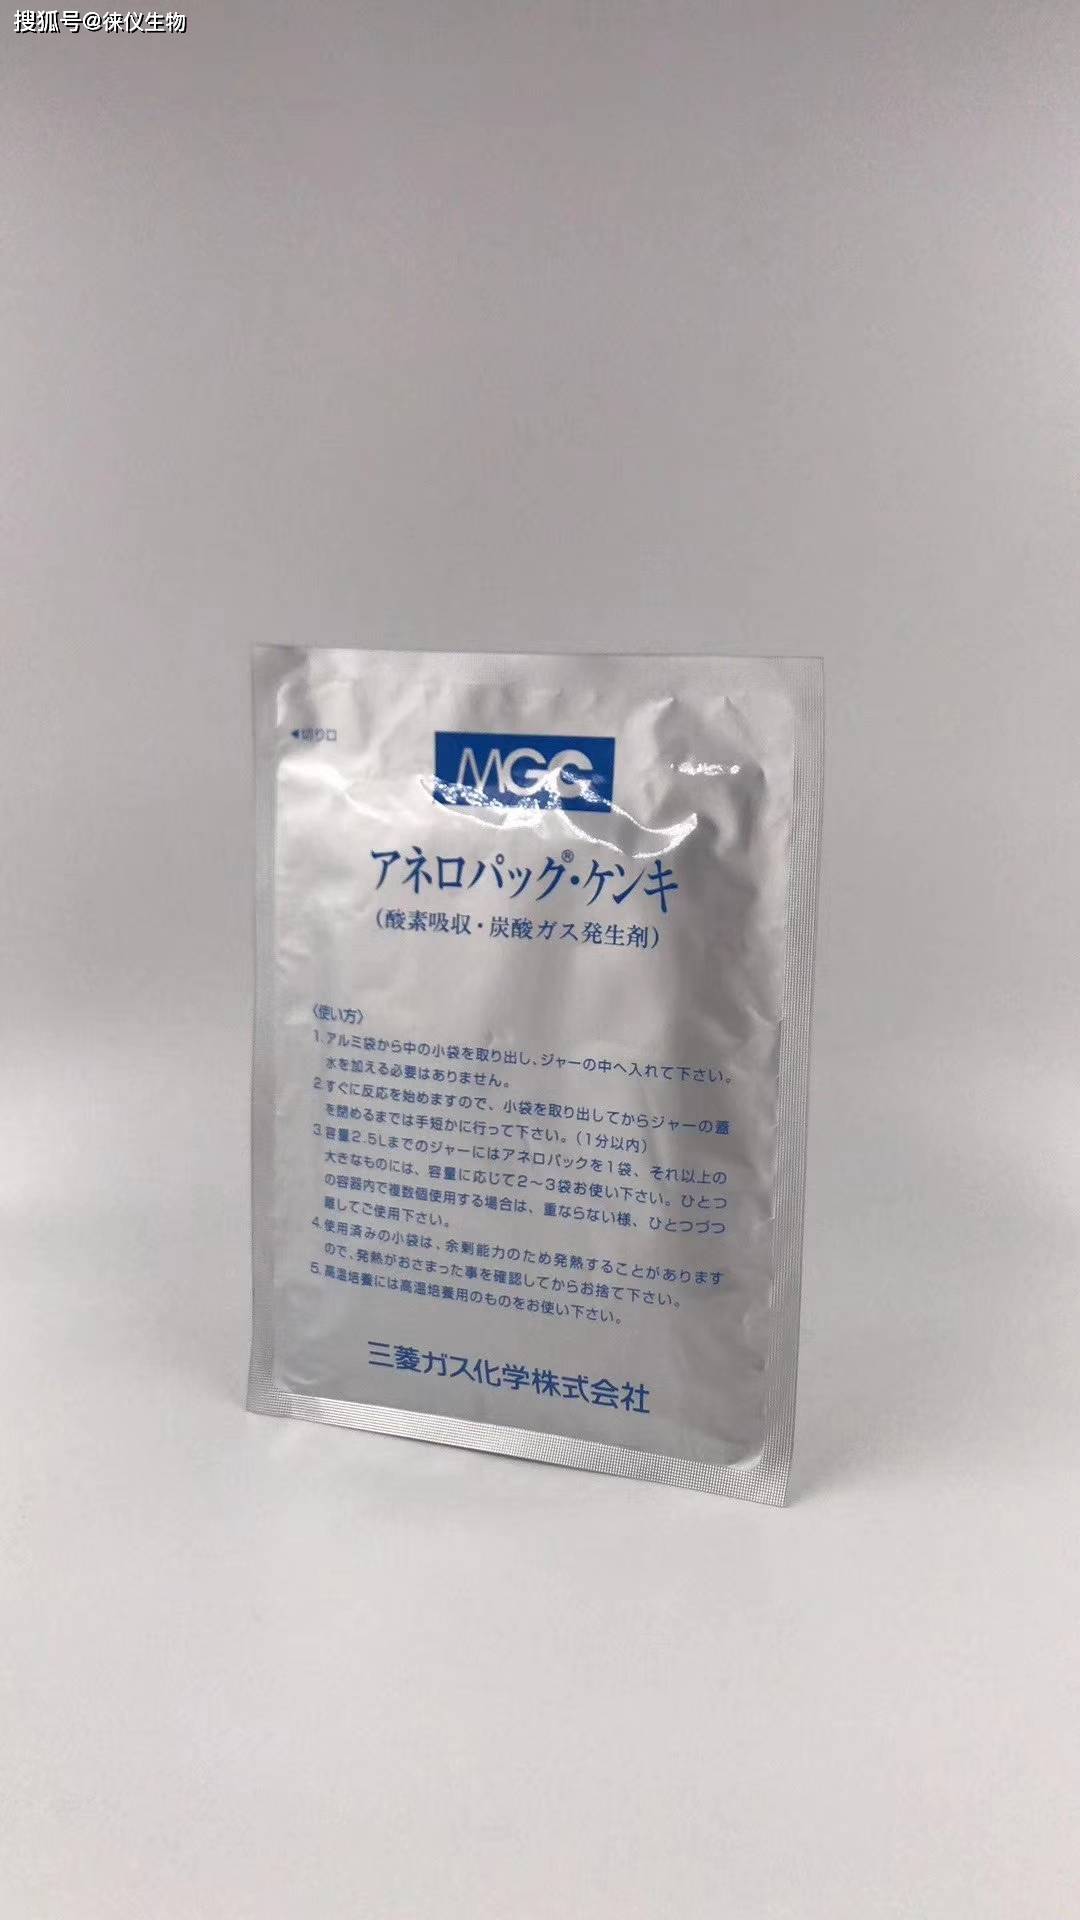 日本三菱厌氧指示剂C 22氧气指示剂介绍